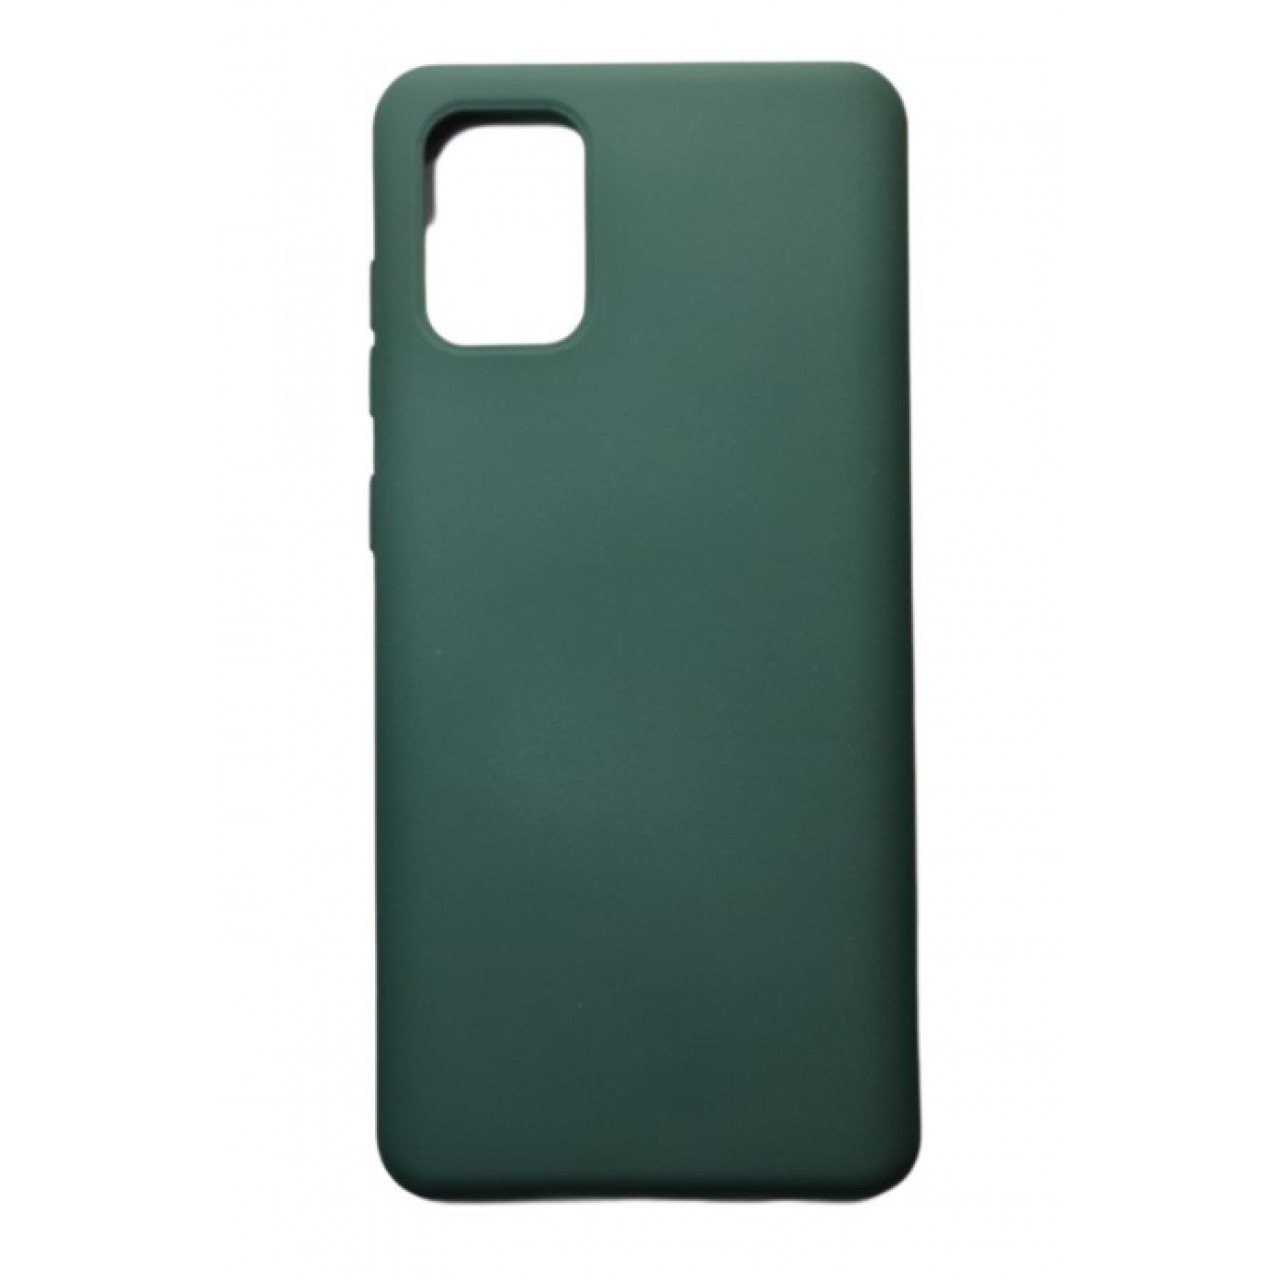 Θήκη Samsung Galaxy S20 PLUS Silicone soft-touch cover - 5094 - Πράσινο - ΟΕΜ